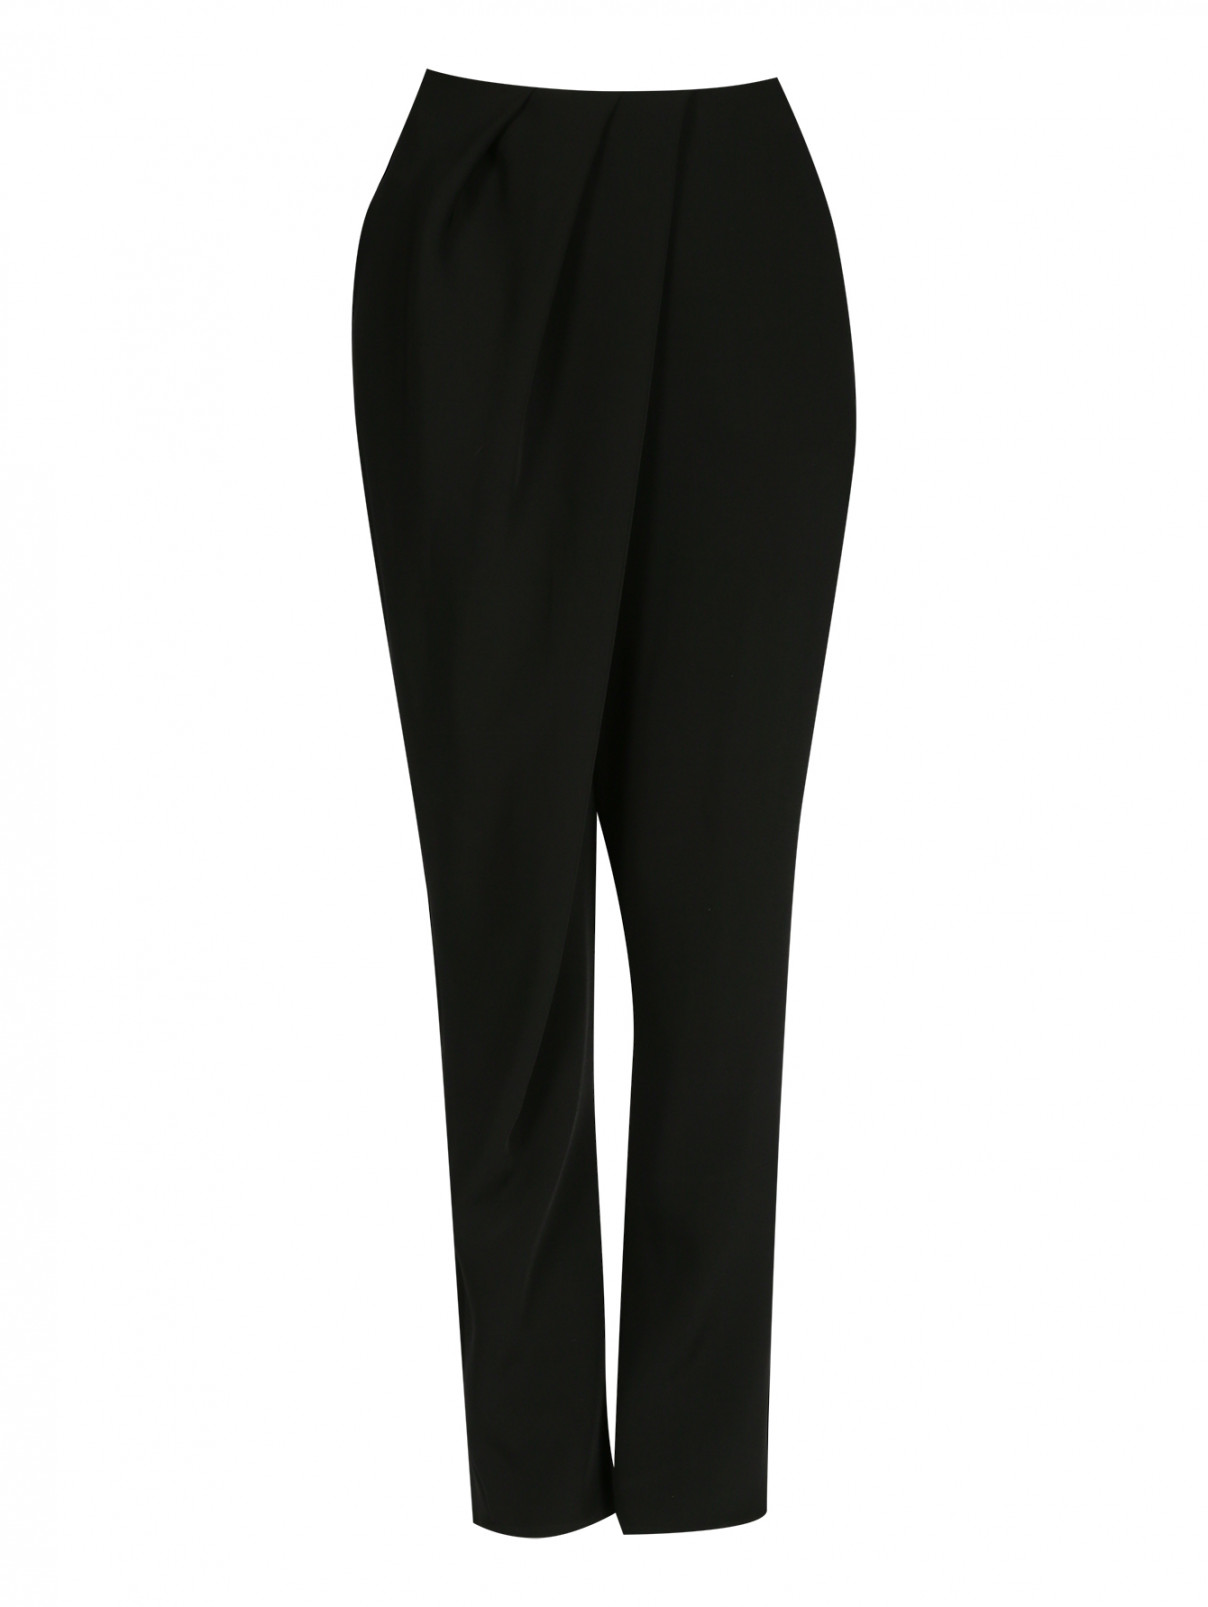 Свободные брюки с запахом и драпировкой Kenzo  –  Общий вид  – Цвет:  Черный